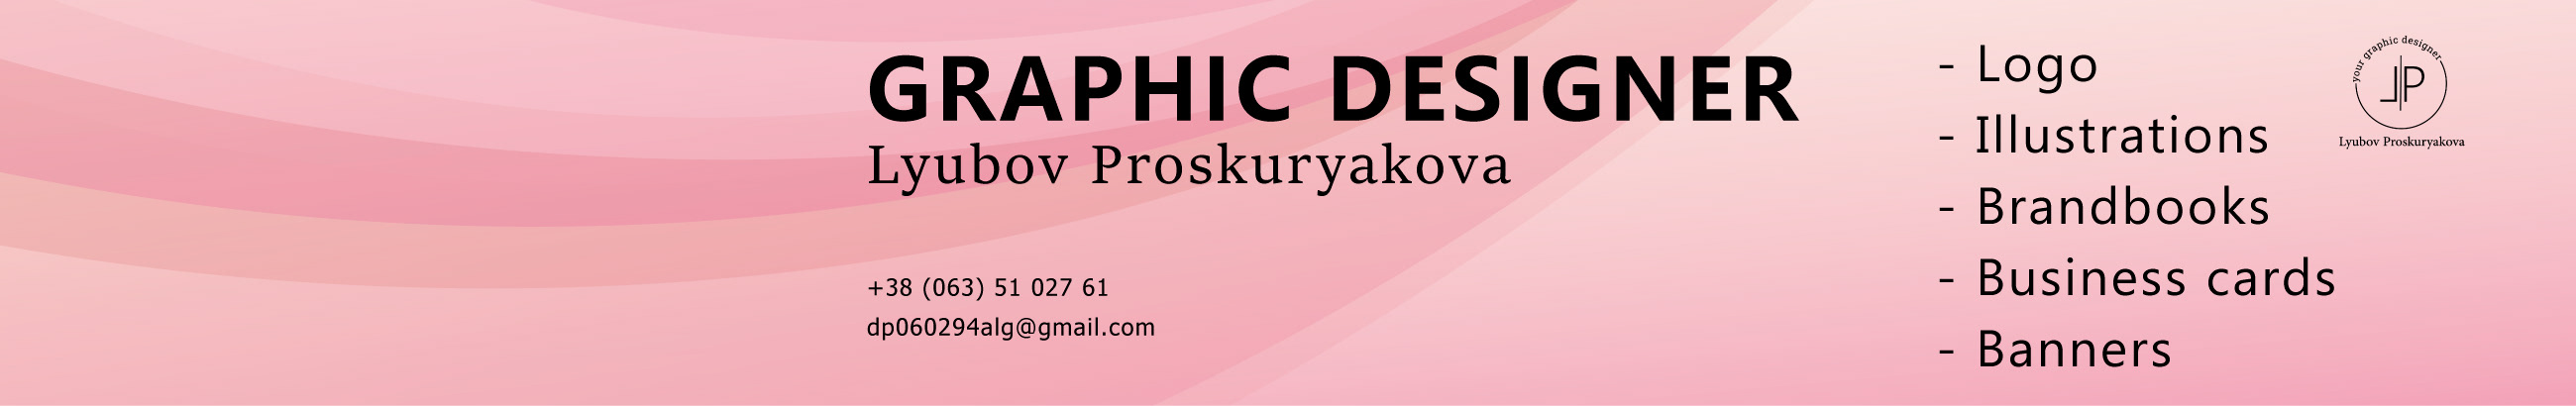 Baner profilu użytkownika Lyubov Proskuryakova